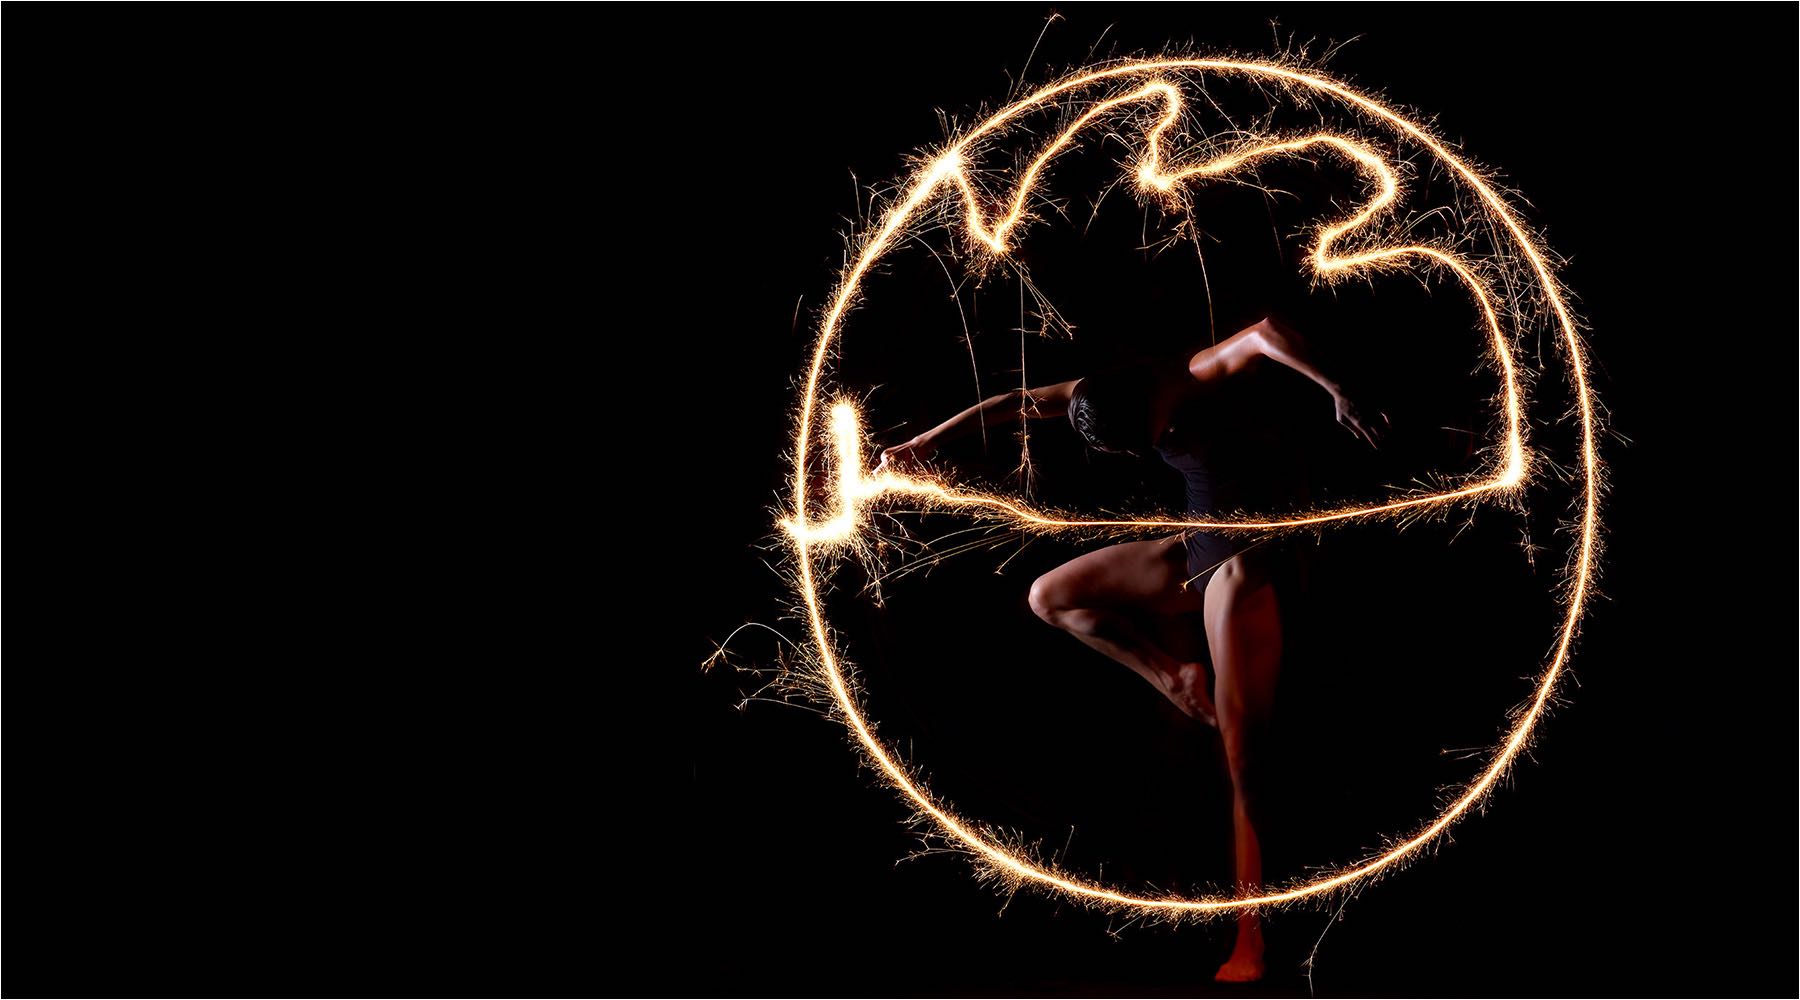  Tanzfotografie. Aufwendiges Tanzshooting mit Feuerwerkseffekt im Studio mit Studioblitzanlage und Mittelformat Kamera. Copyright by Fotostudio Jörg Riethausen 